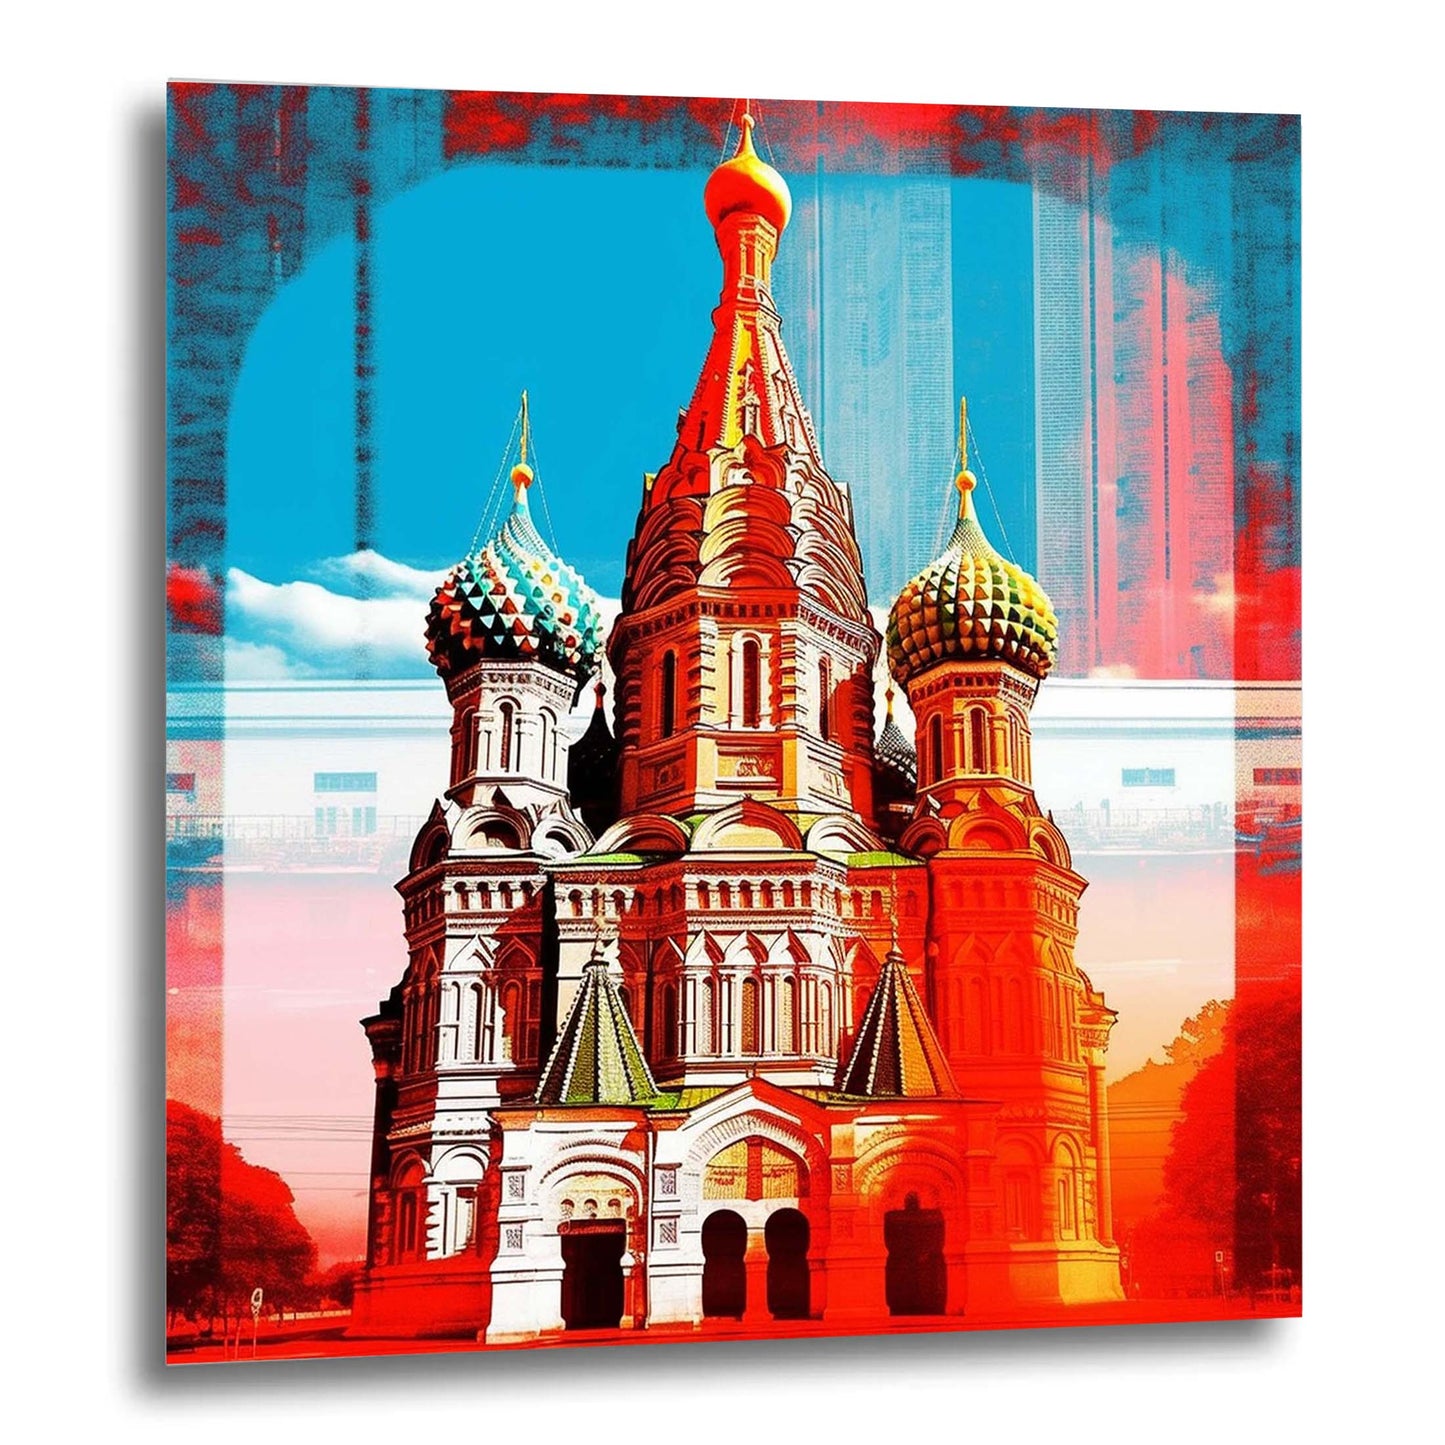 Moskau Kreml - Wandbild in der Stilrichtung der Pop-Art